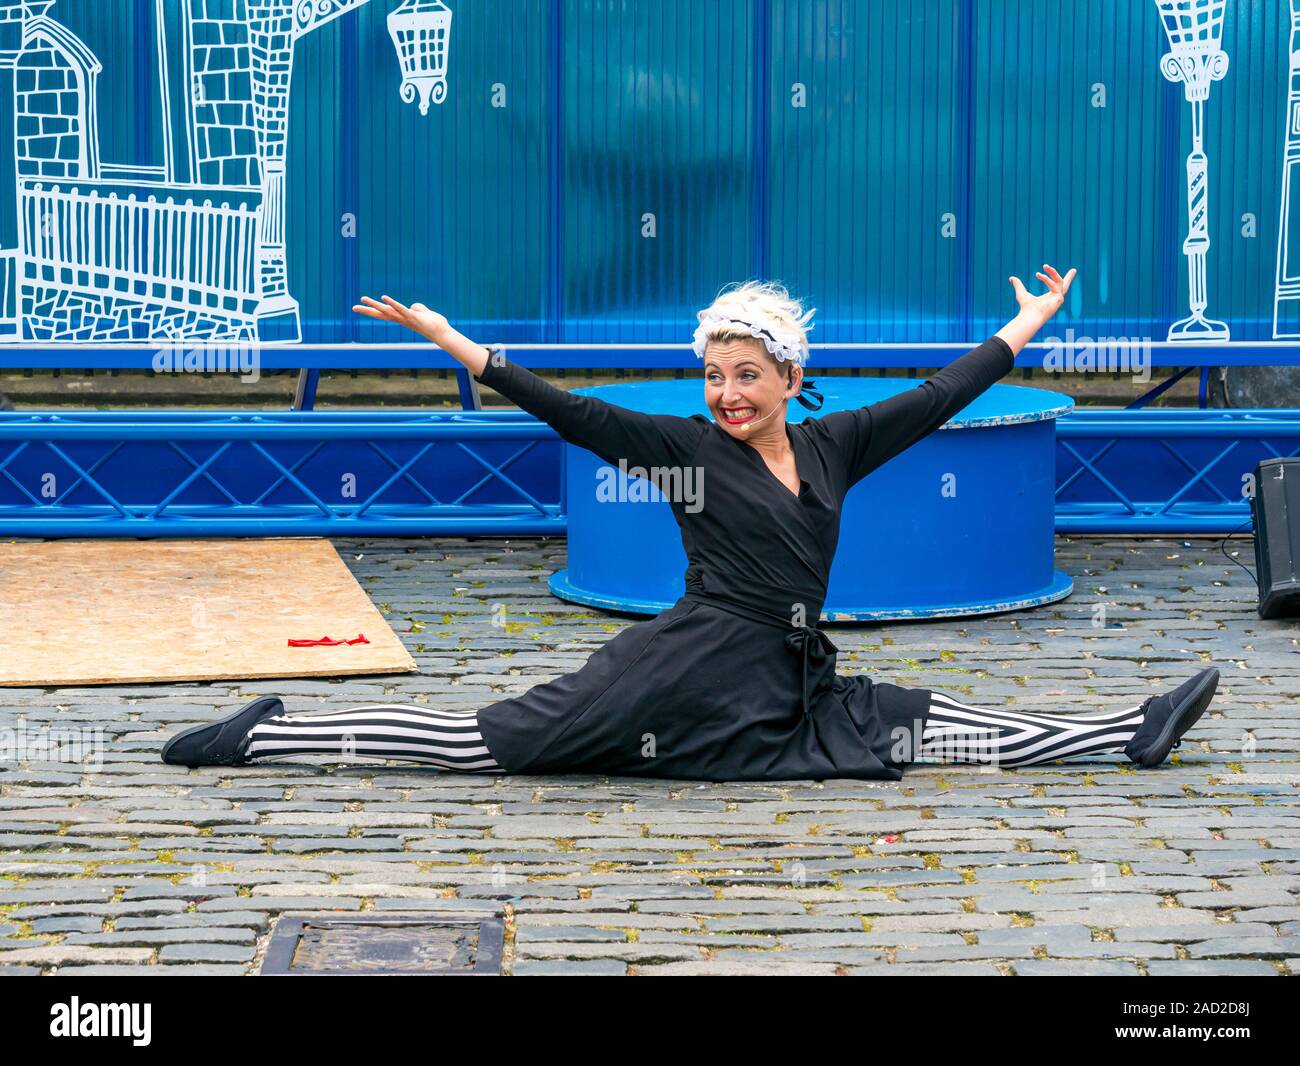 Australischen weiblichen Acrobat das spilleds am Edinburgh Festival Fringe, Parliament Square, Edinburgh, Schottland, Großbritannien Stockfoto